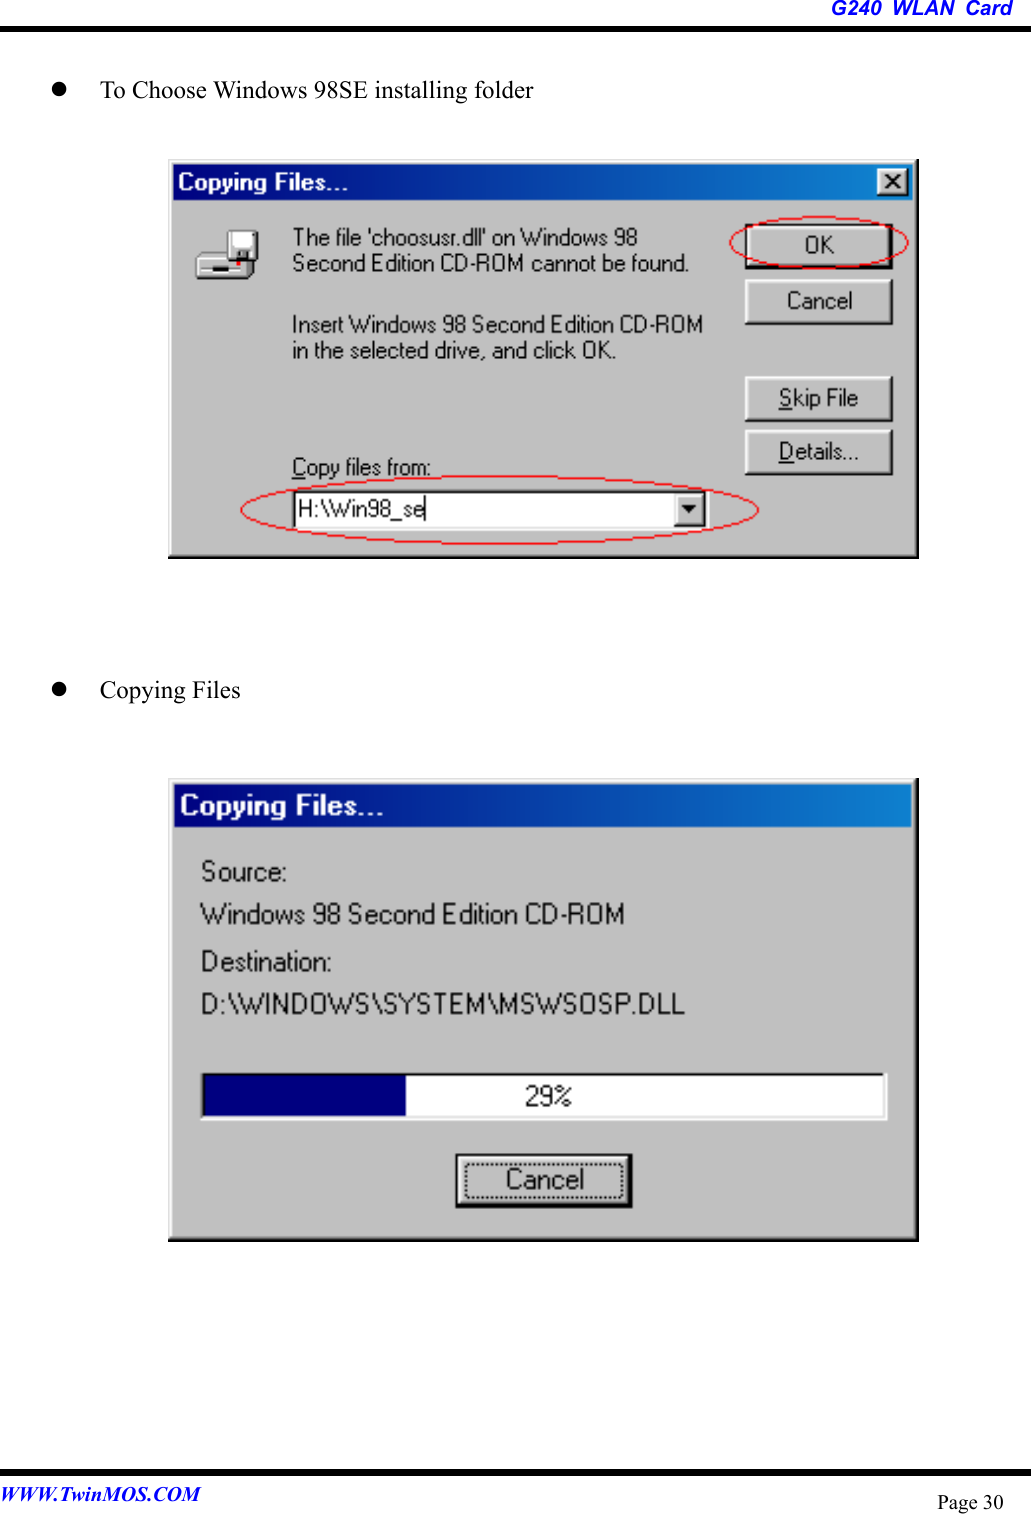   G240 WLAN Card WWW.TwinMOS.COM  Page 30   To Choose Windows 98SE installing folder                  Copying Files                     